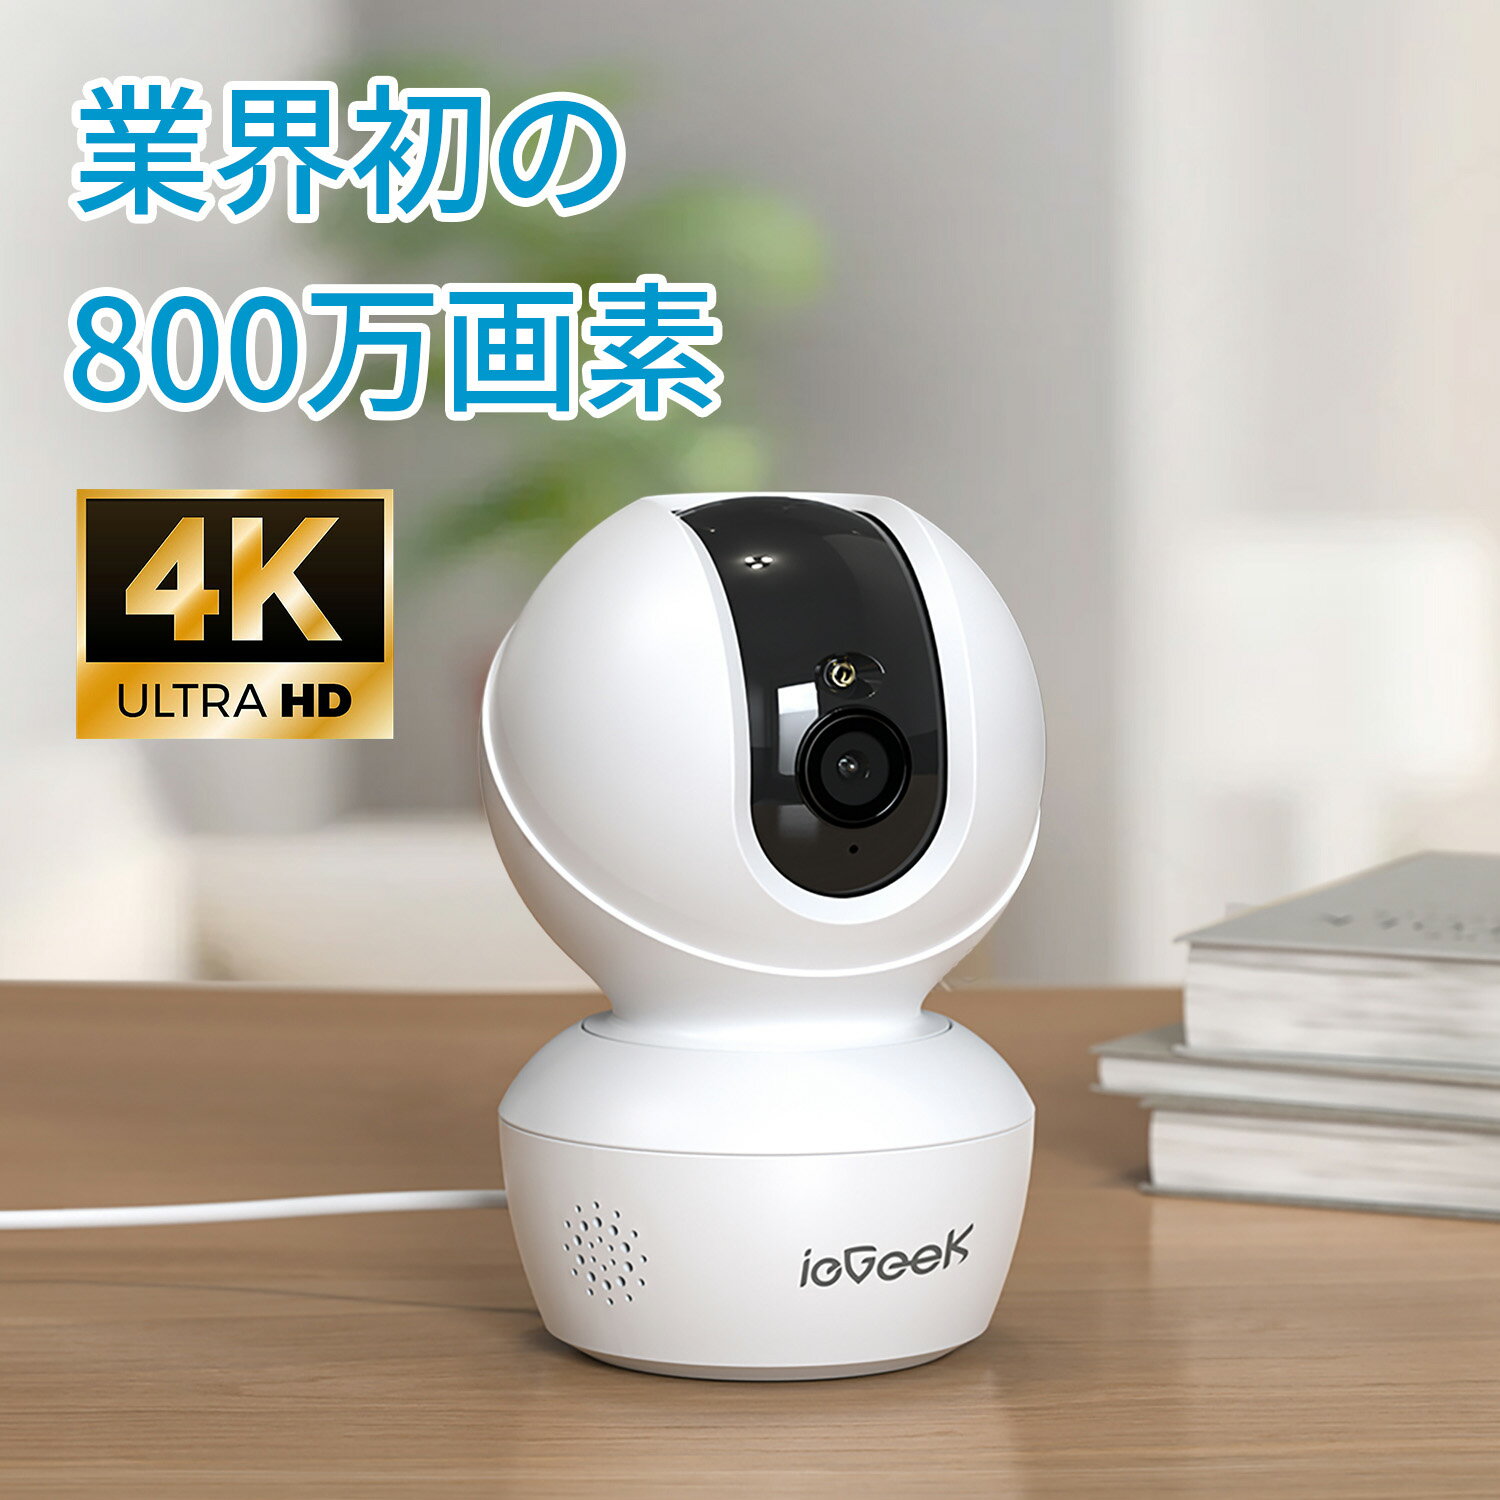 【最新5GHz Wi-Fi対応】ペットカメラ 800万画素 